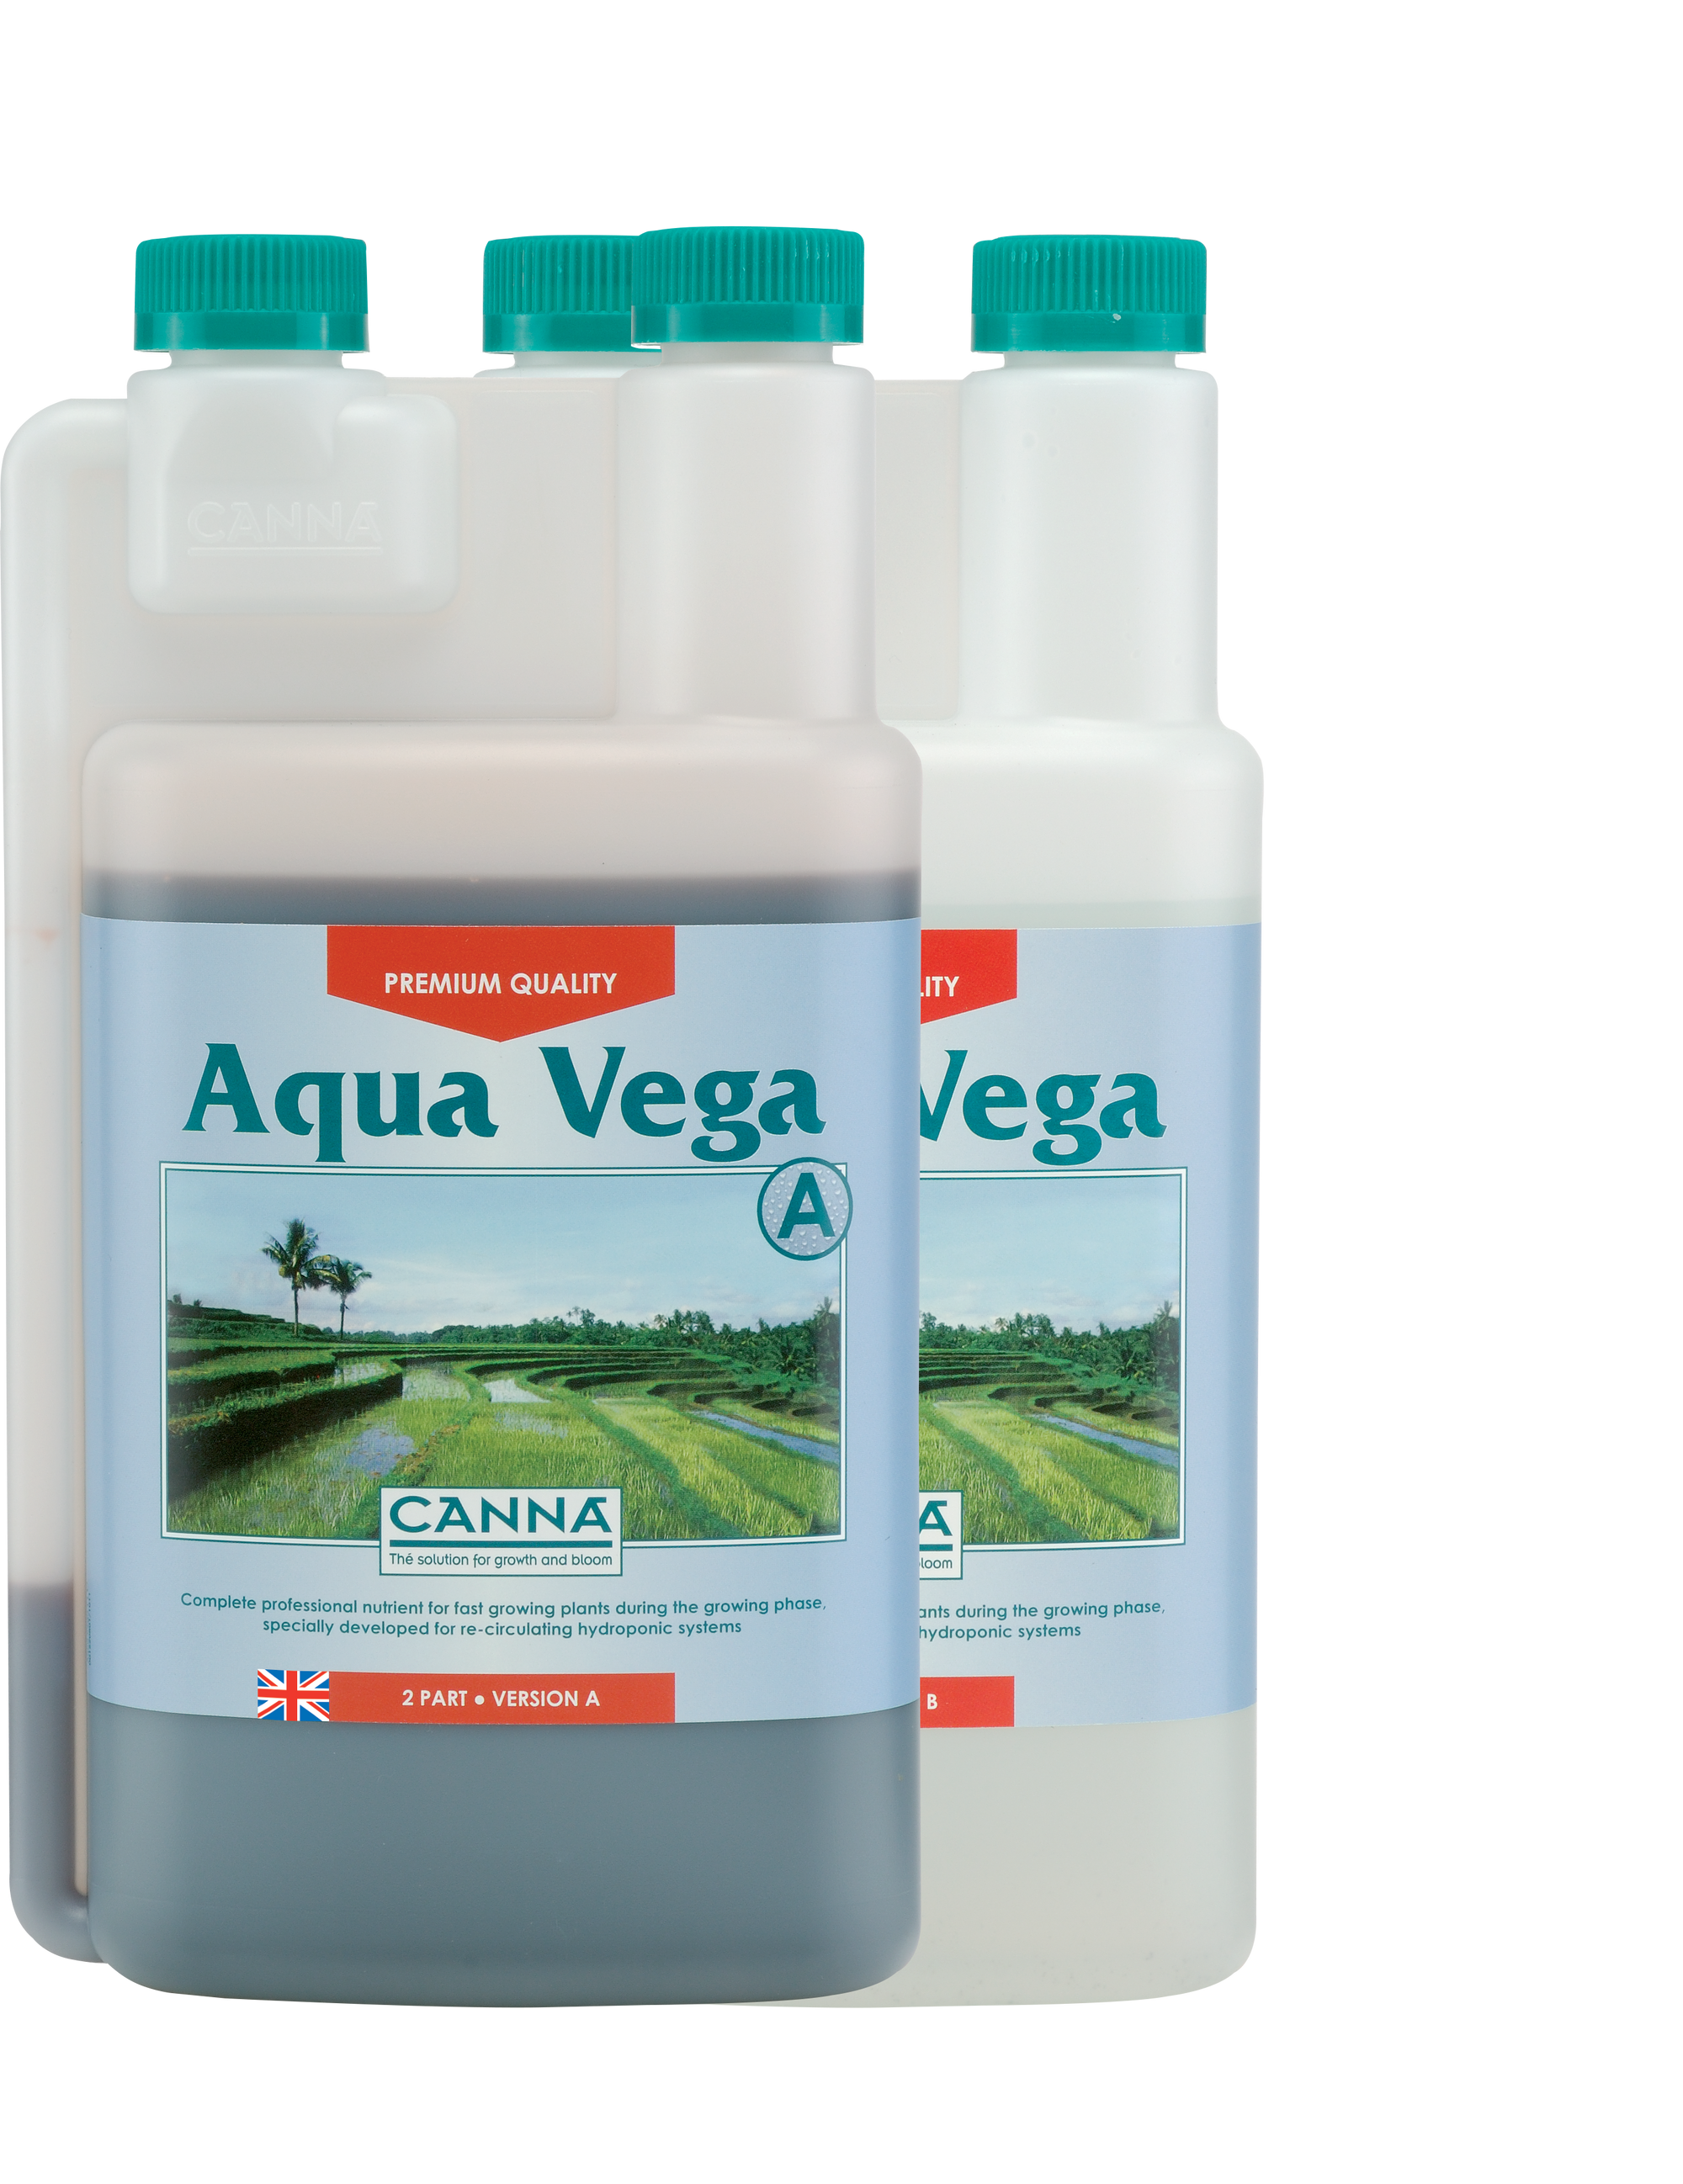 Canna Aqua Vega